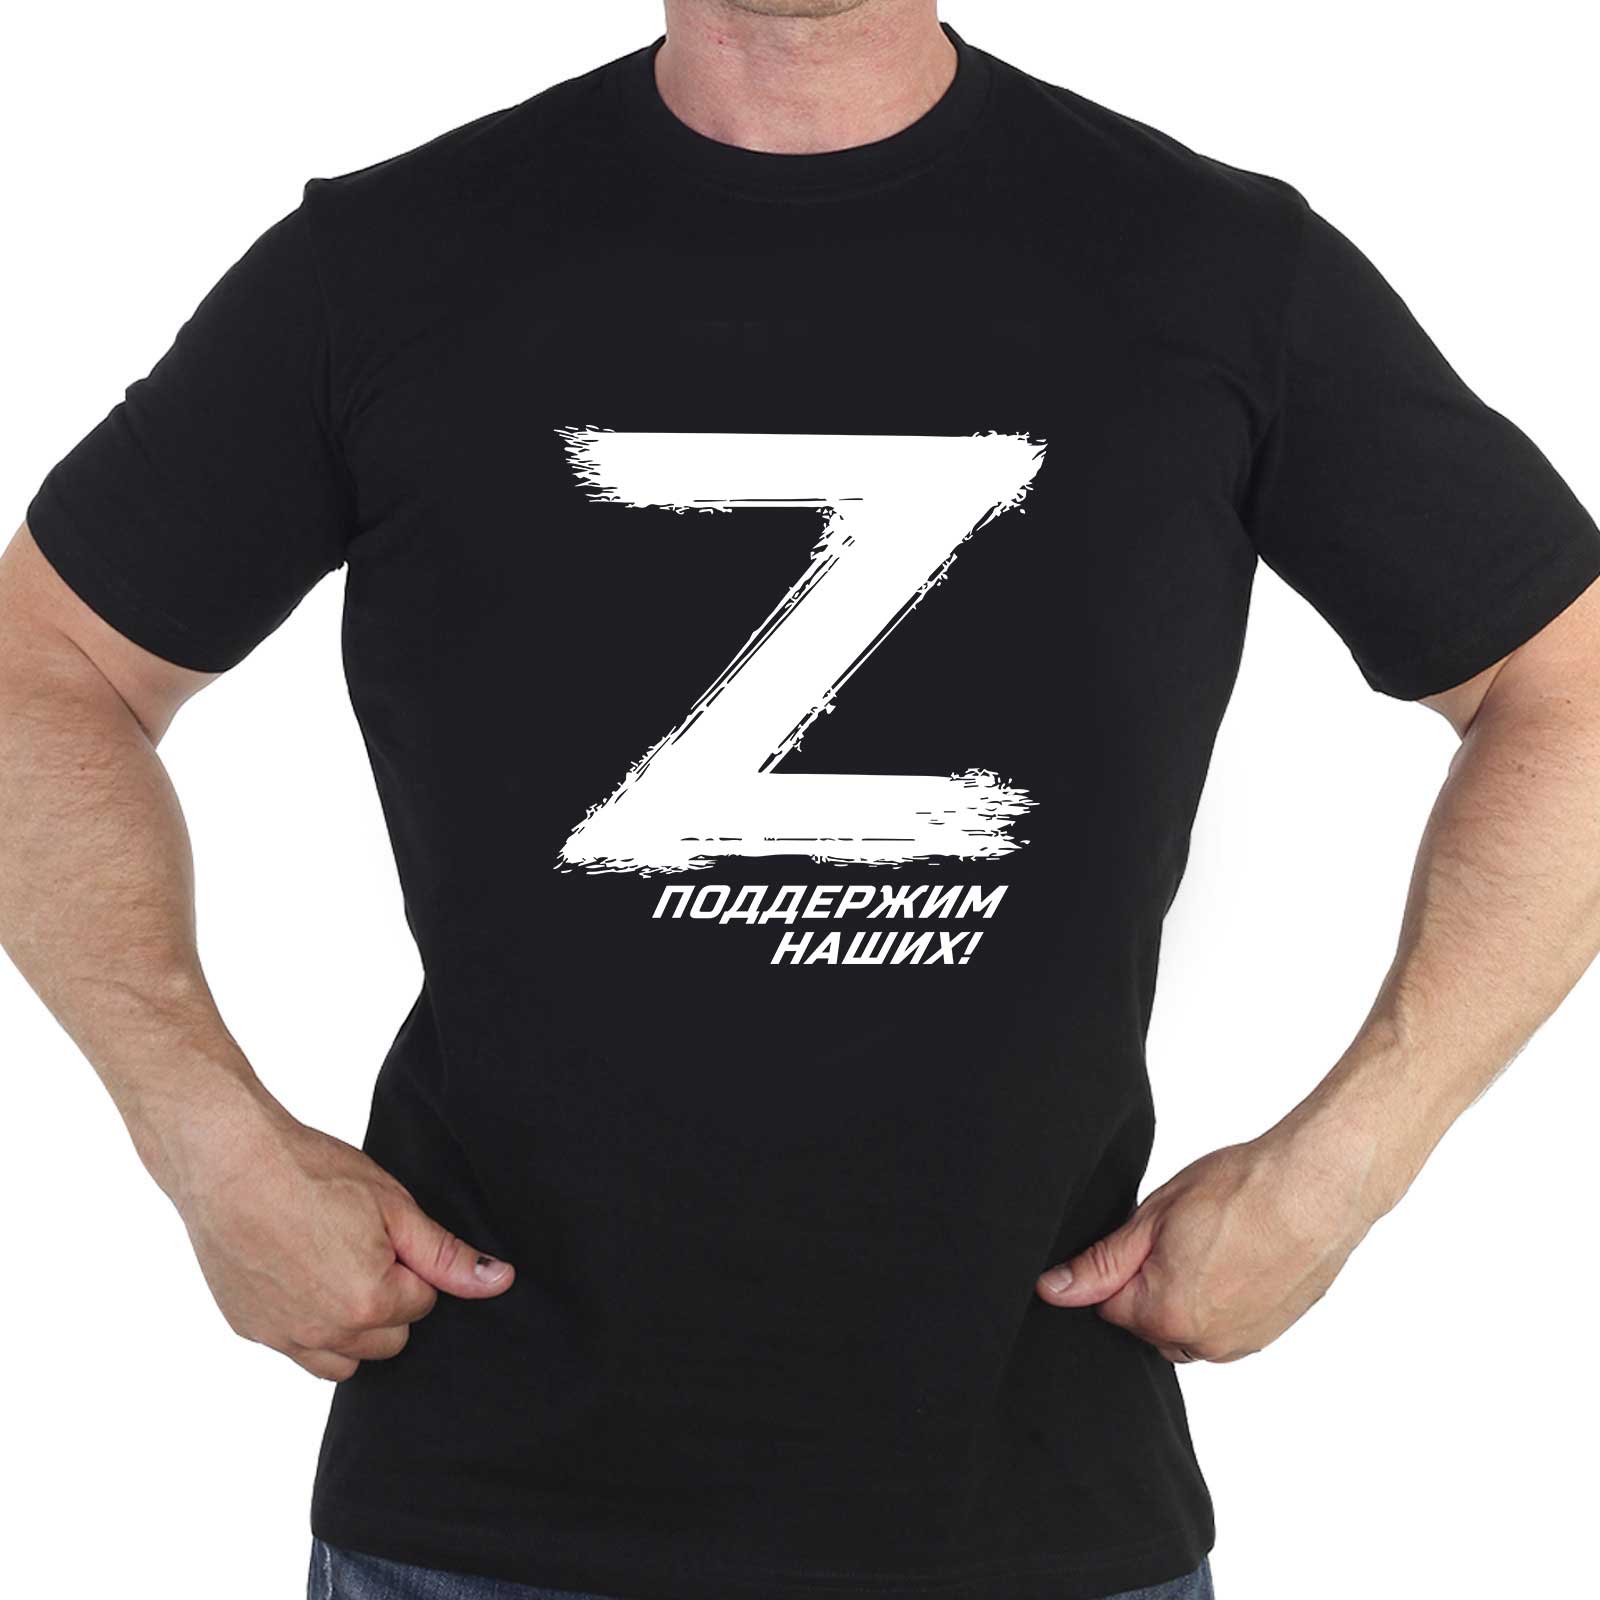 Купить футболку с эмблемой «Z» и надписью «Поддержим наших!»